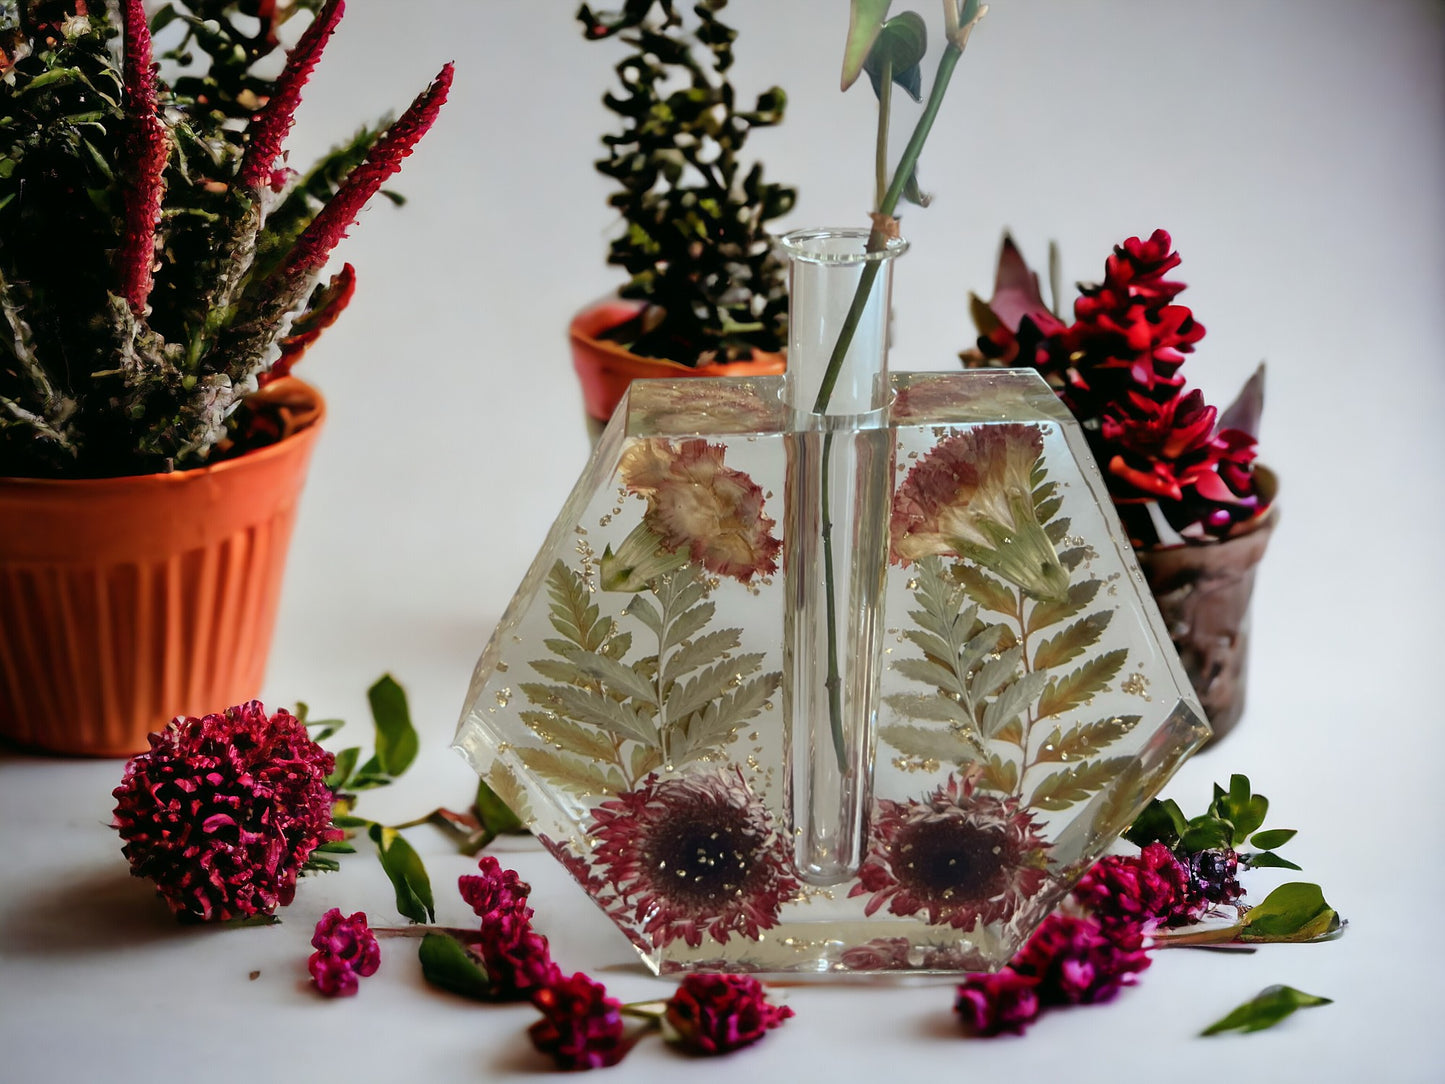 Propogation Station | Flower Vase | Resin Art | Plant Propogation | Dried Floral Resin Art